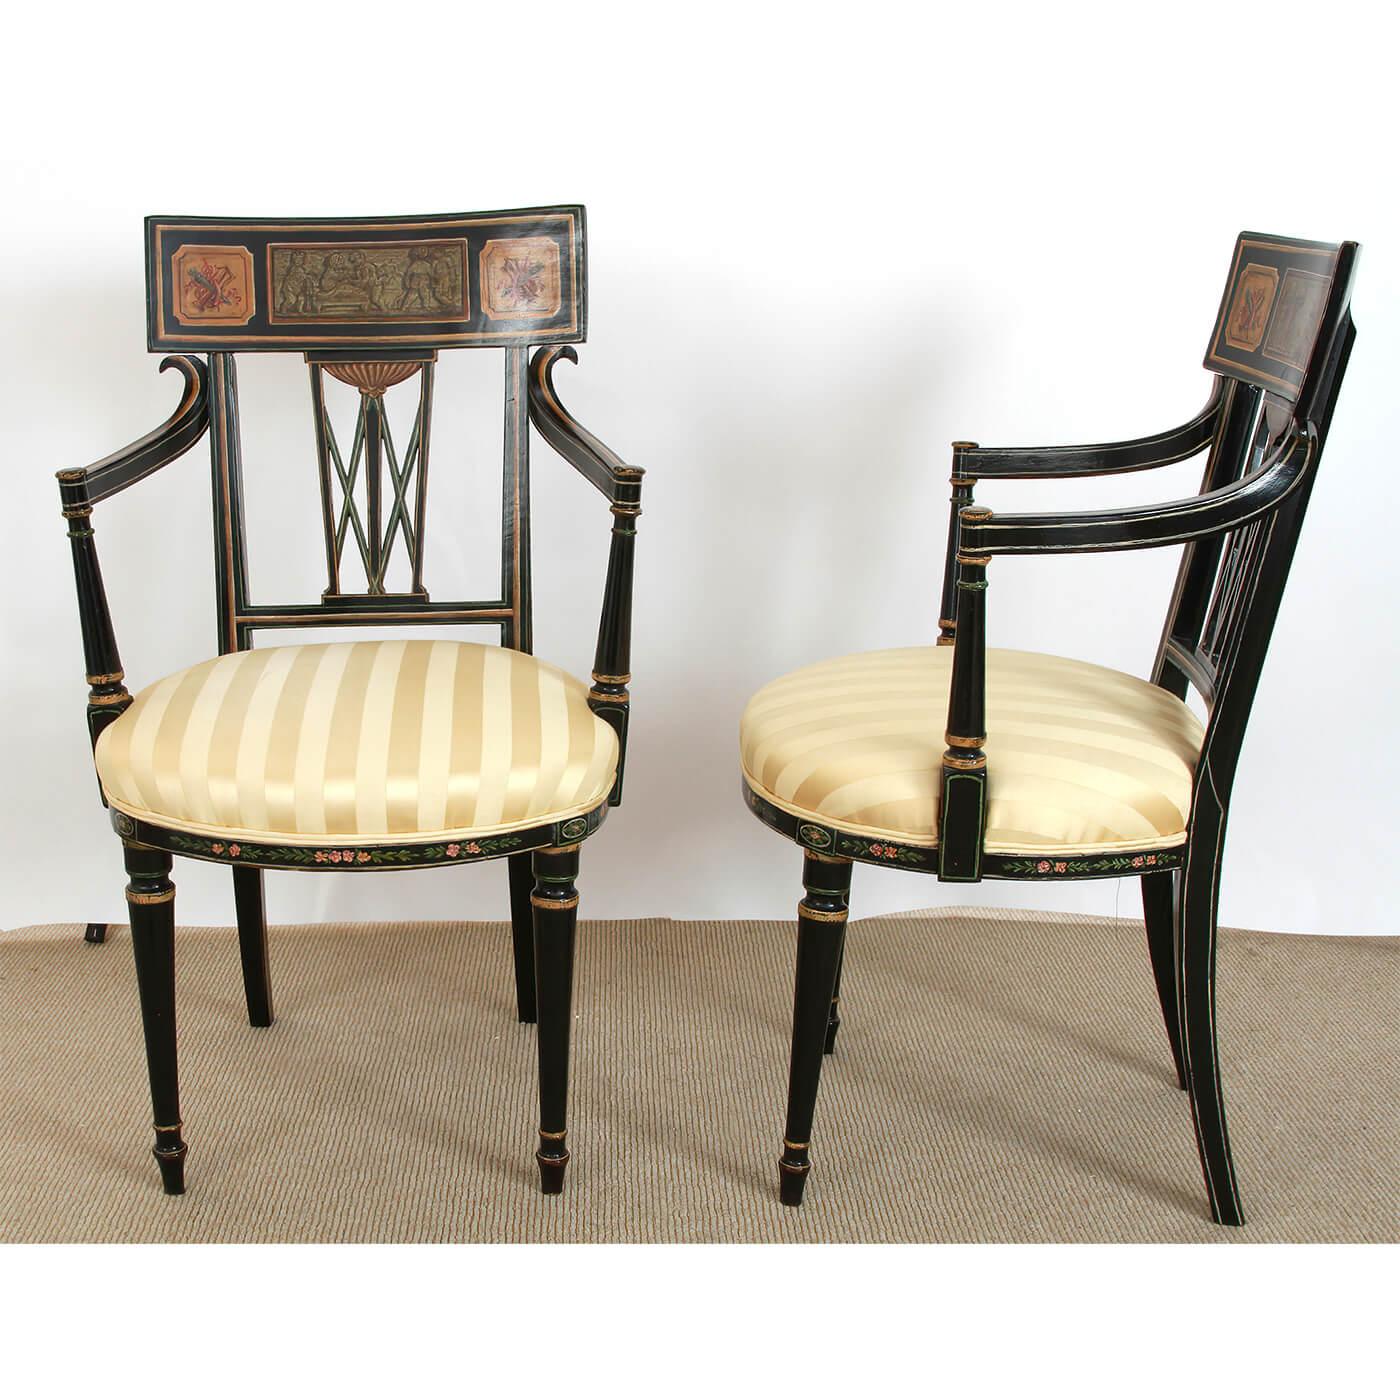 Ein feines Paar englischer Regency-Sessel aus Ebenholz mit klassisch bemalten Plattenleisten mit passenden Motiven und vergoldeten Verzierungen. Um 1810

Abmessungen: 21